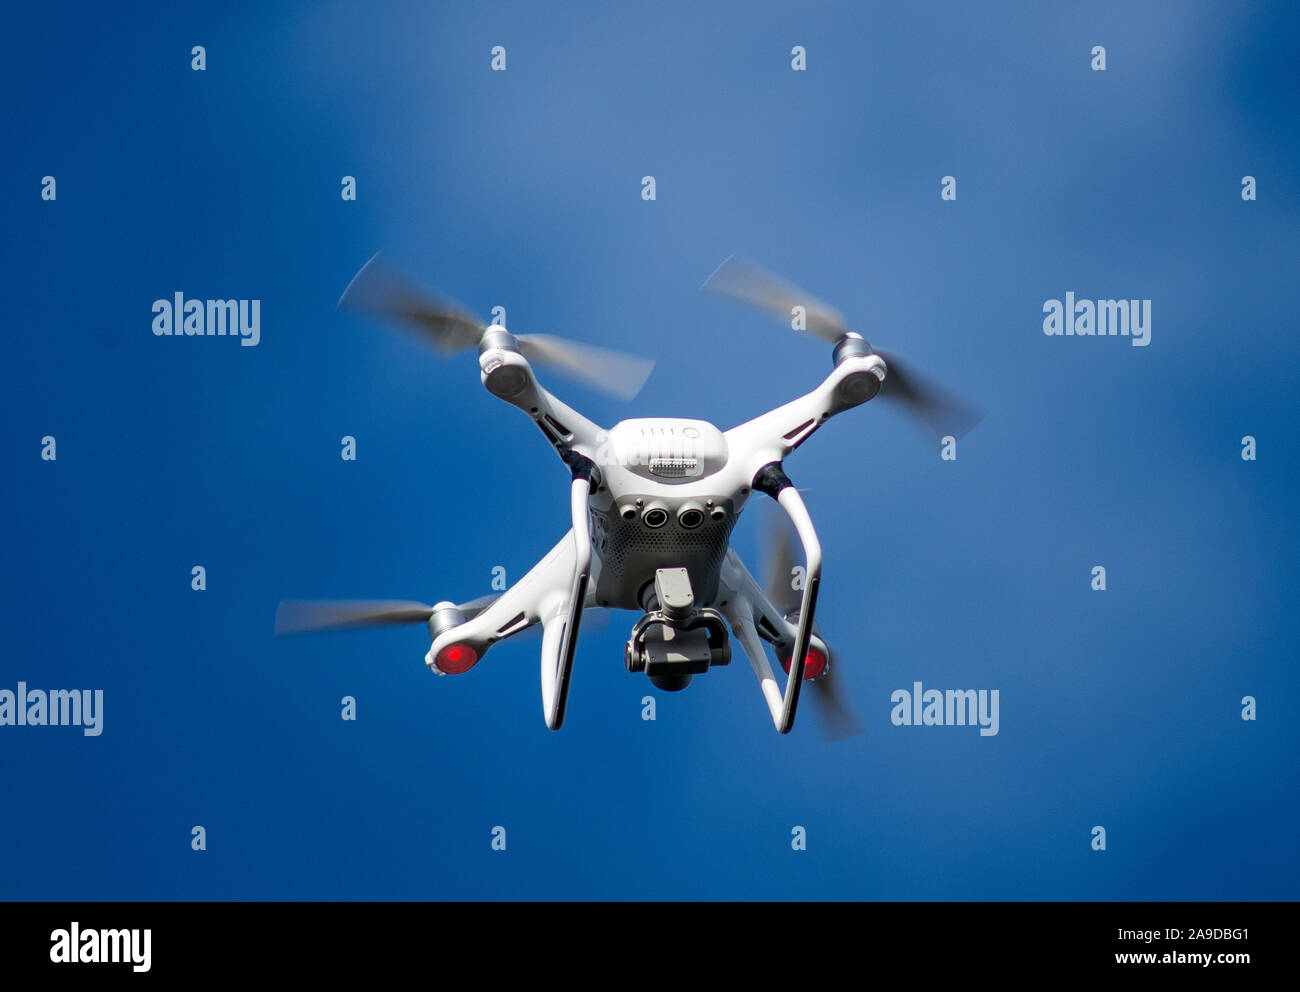 Weiße Drohne am blauen Himmel mit sich drehenden Propellern. Stockfoto